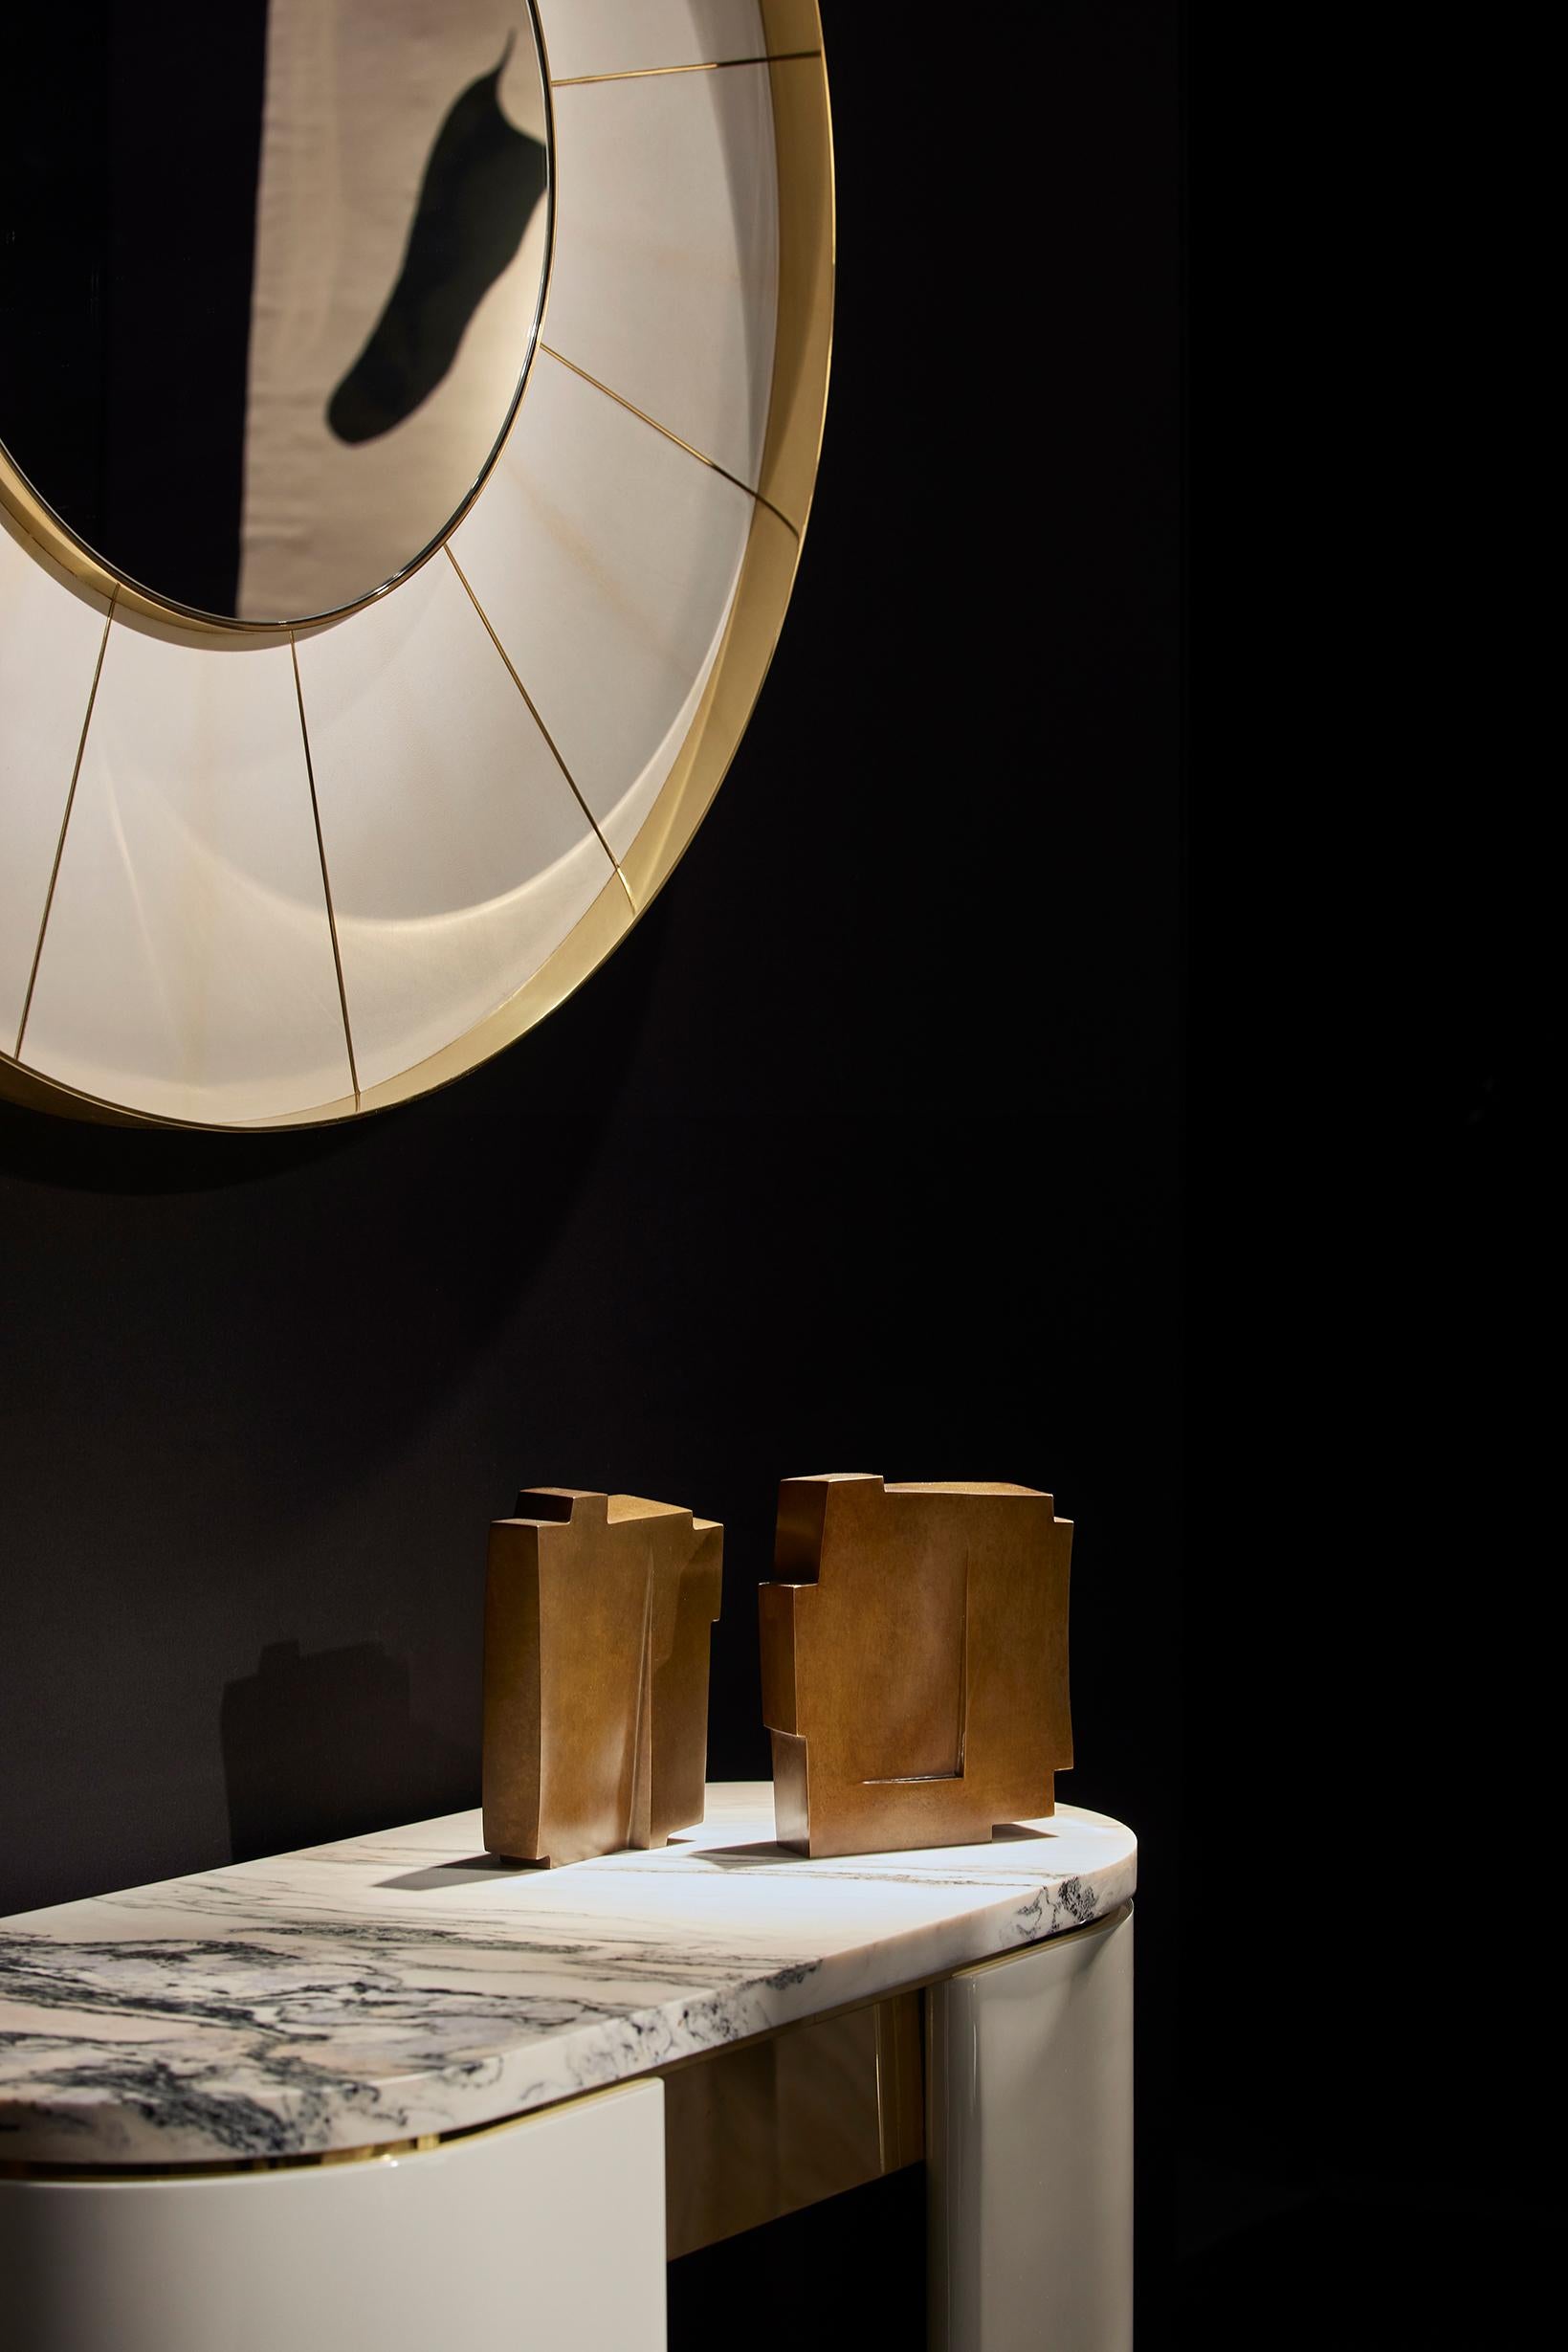 Bronzeskulptur von Perrin & Perrin, französische Glaskünstler, vertreten durch die Galerie Negropontes.
Maße: H 21 x B 18 x T 7 cm / H 8,3 x B 7,1 x T 2,7 inch
Martine und Jacki Perrin bilden zusammen ein Duo, das durch ihre Individualität